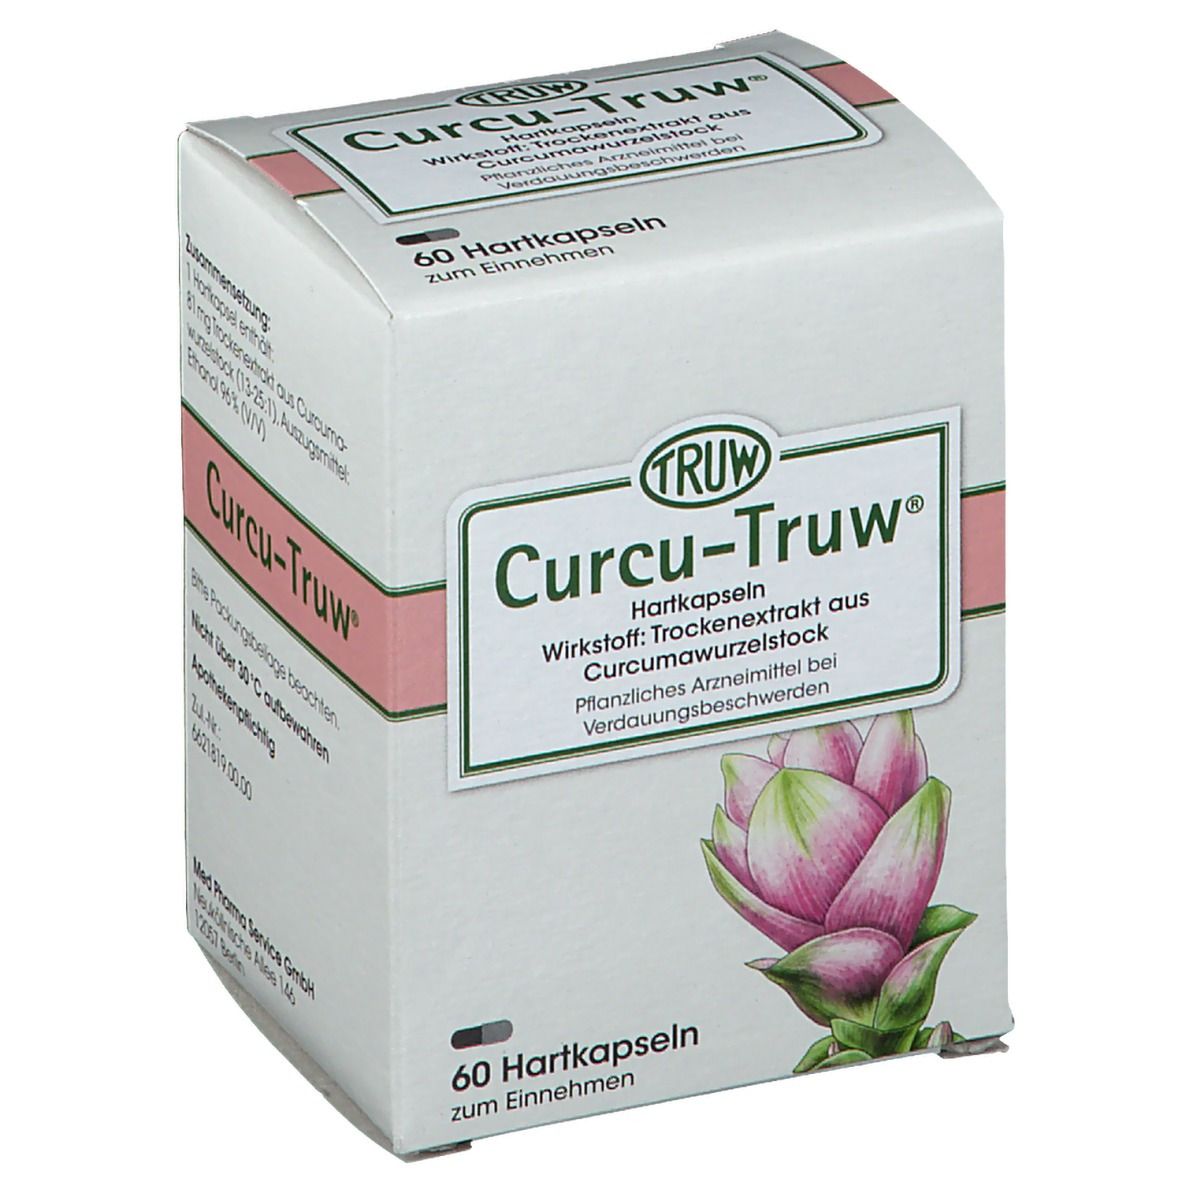 Curcu-Truw®